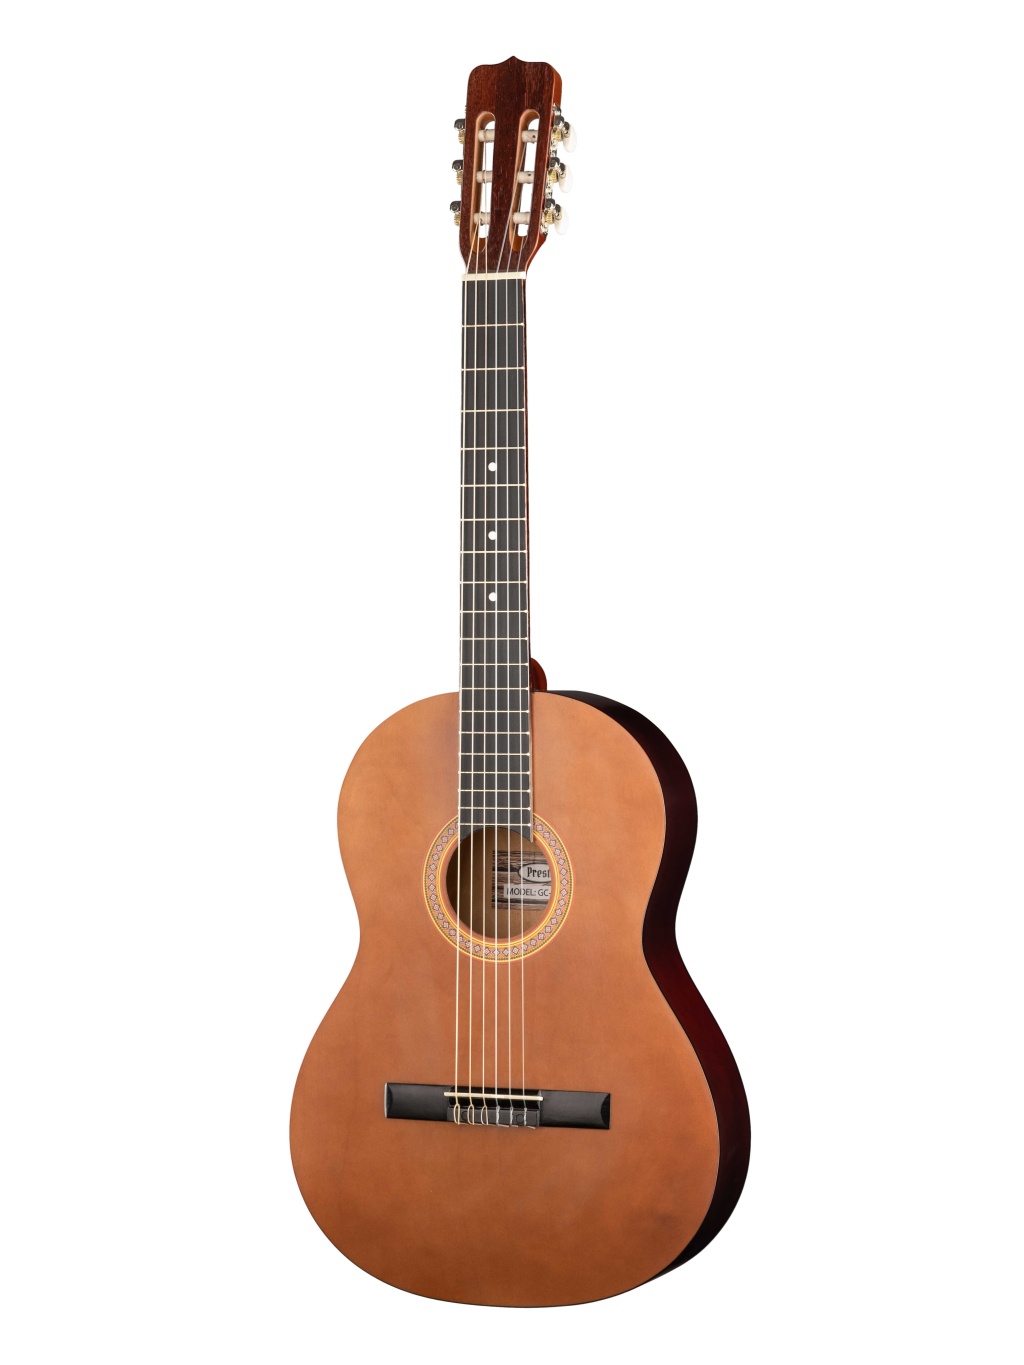 GC-BN20-G-4/4 Классическая гитара, коричневая, глянцевая, Presto